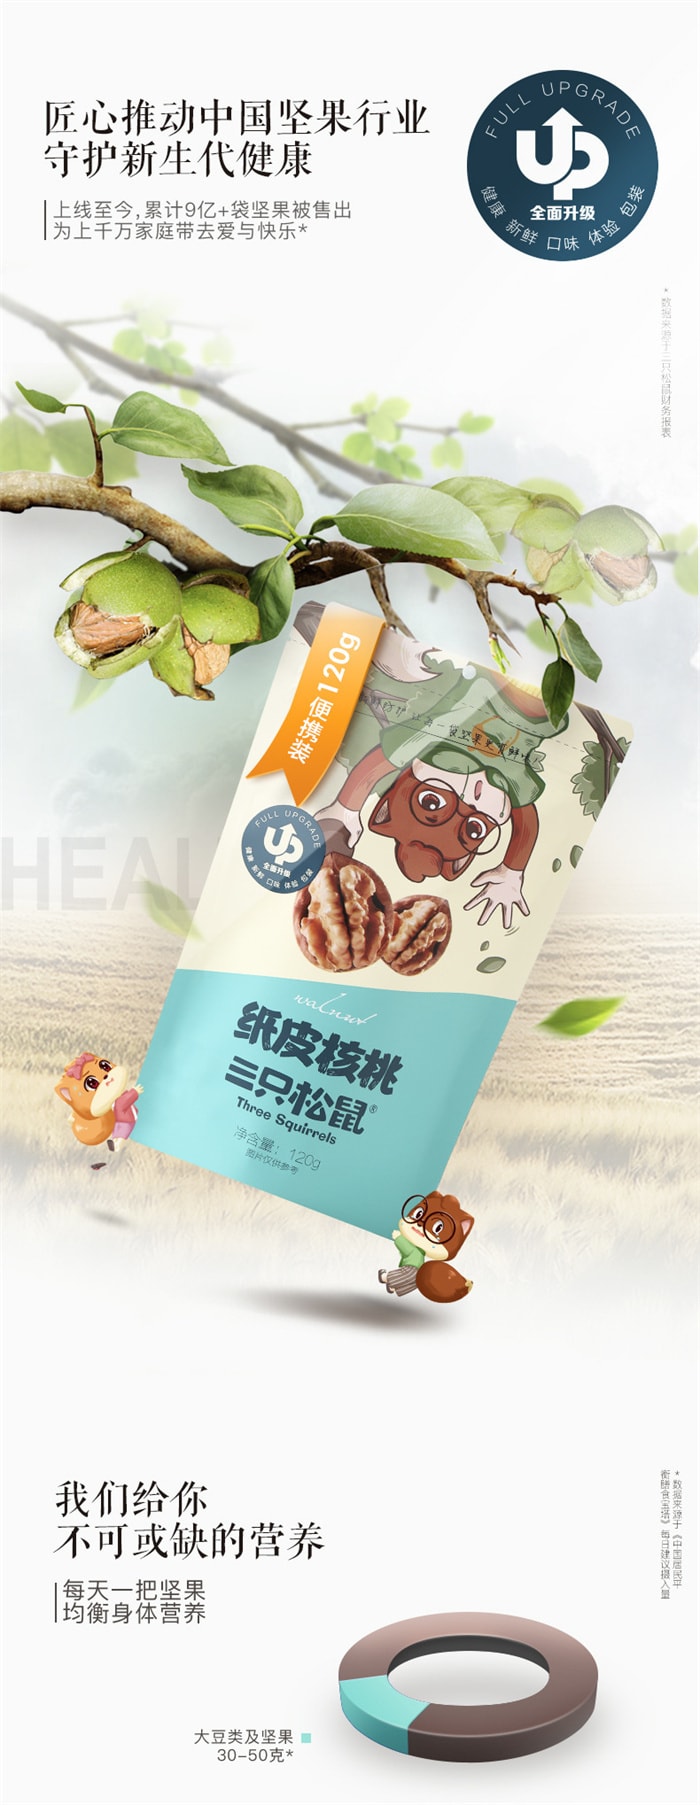 【中国直邮】三只松鼠 纸皮核桃 每日零食 坚果炒货特产干果薄皮核桃 120g/袋